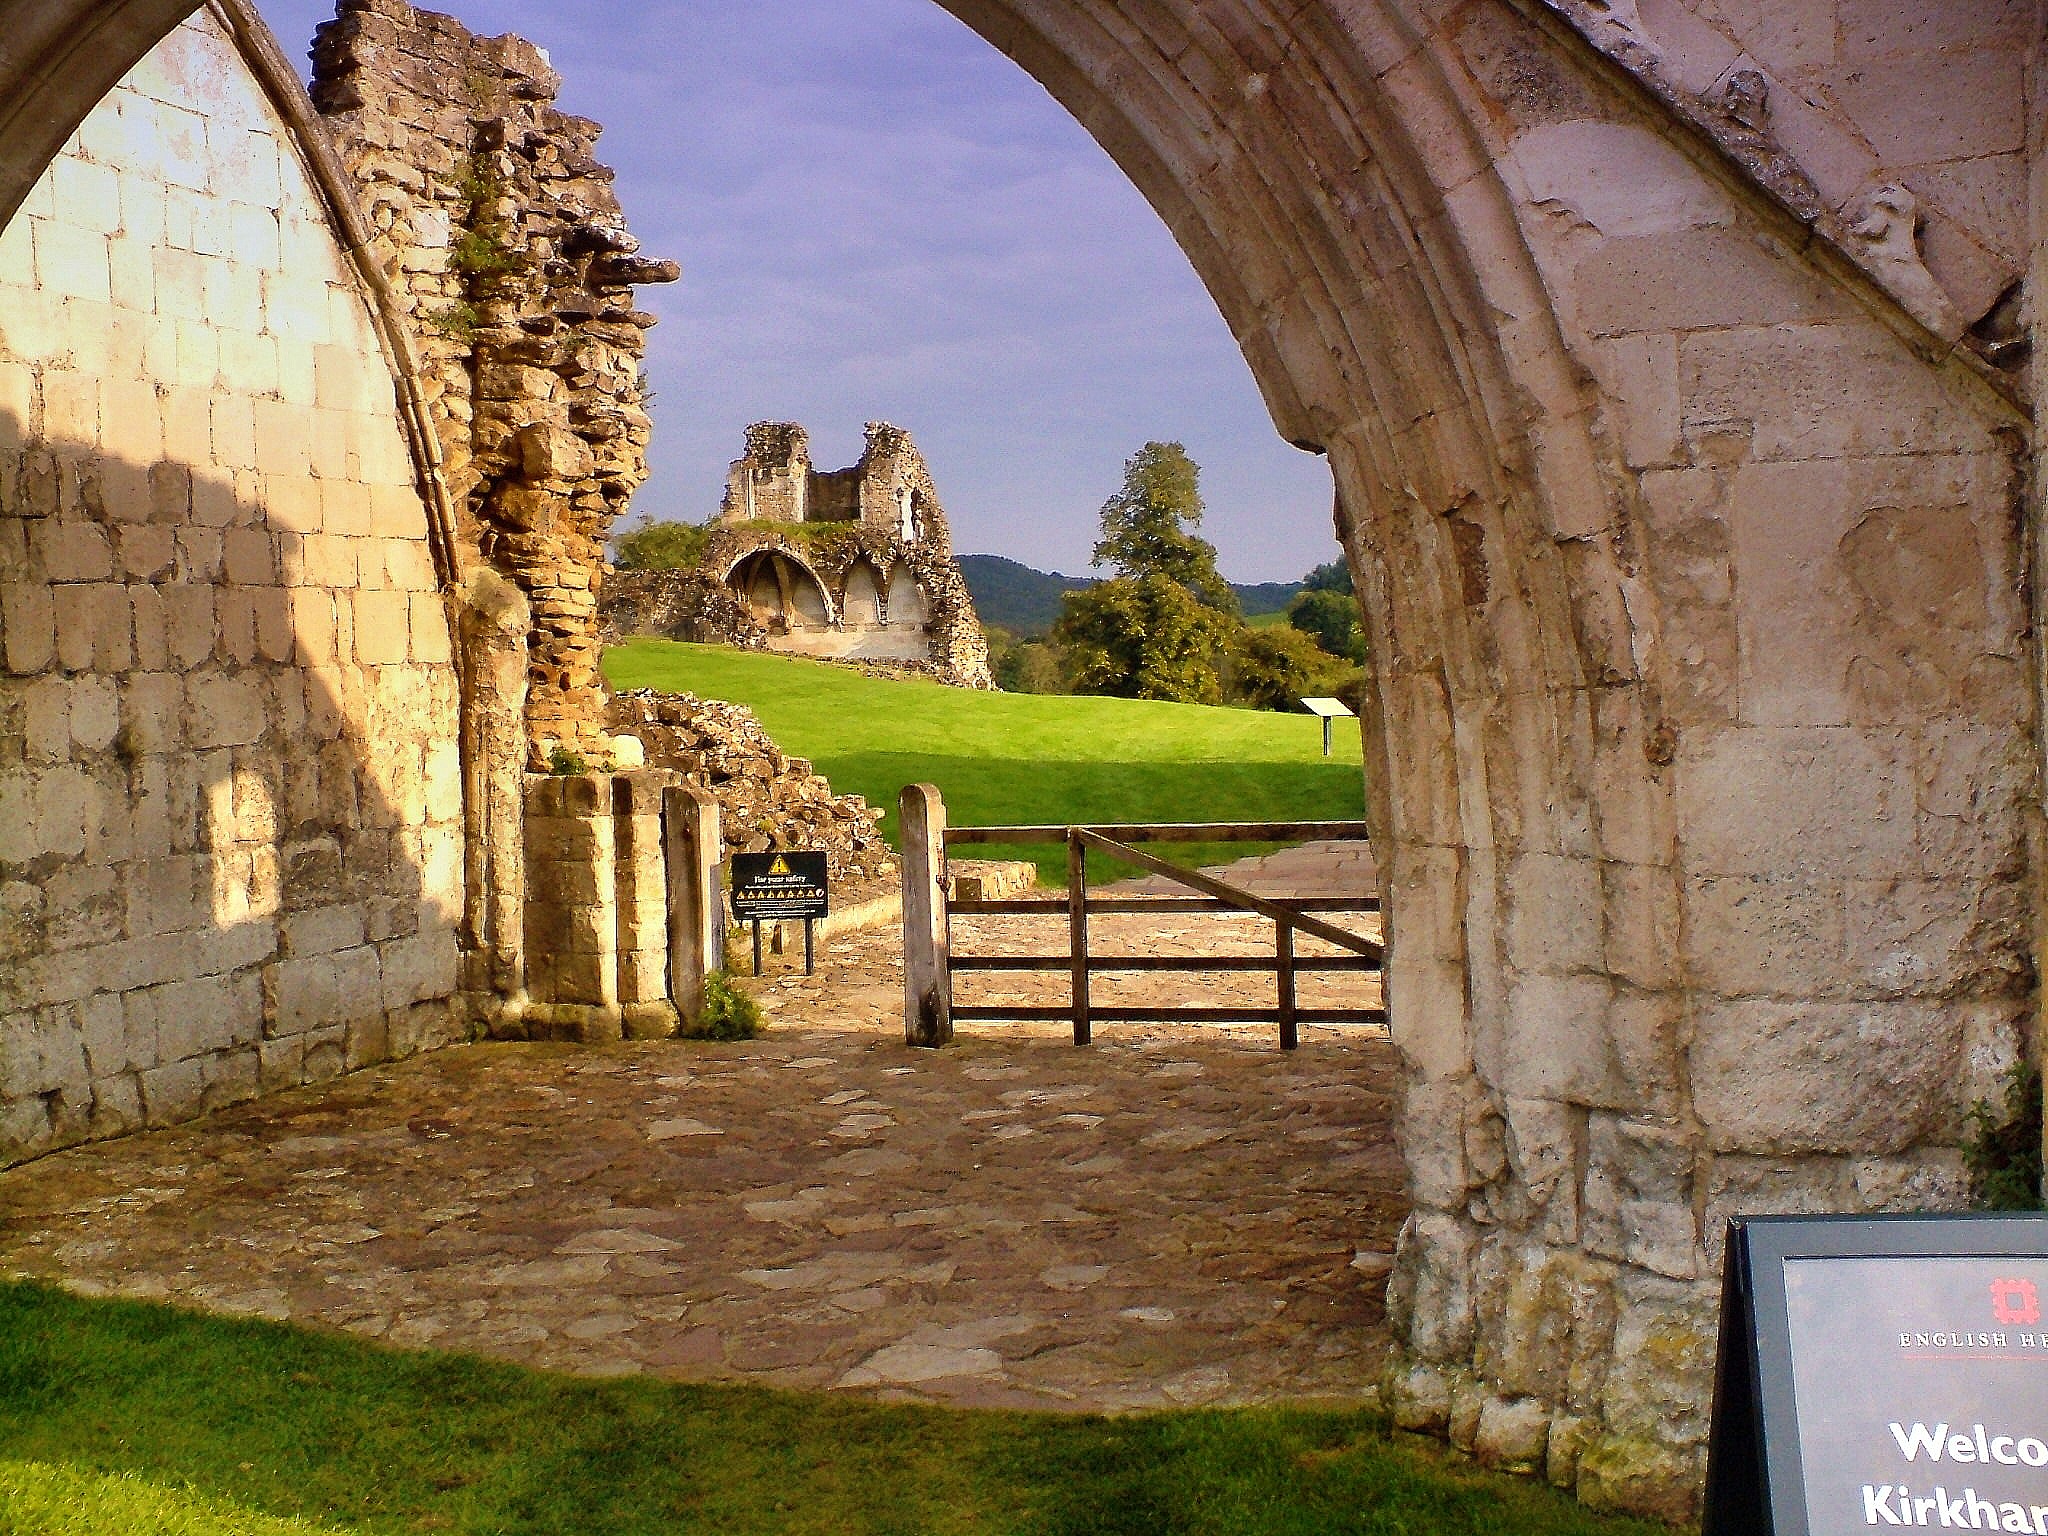 Kirkham abbey photo